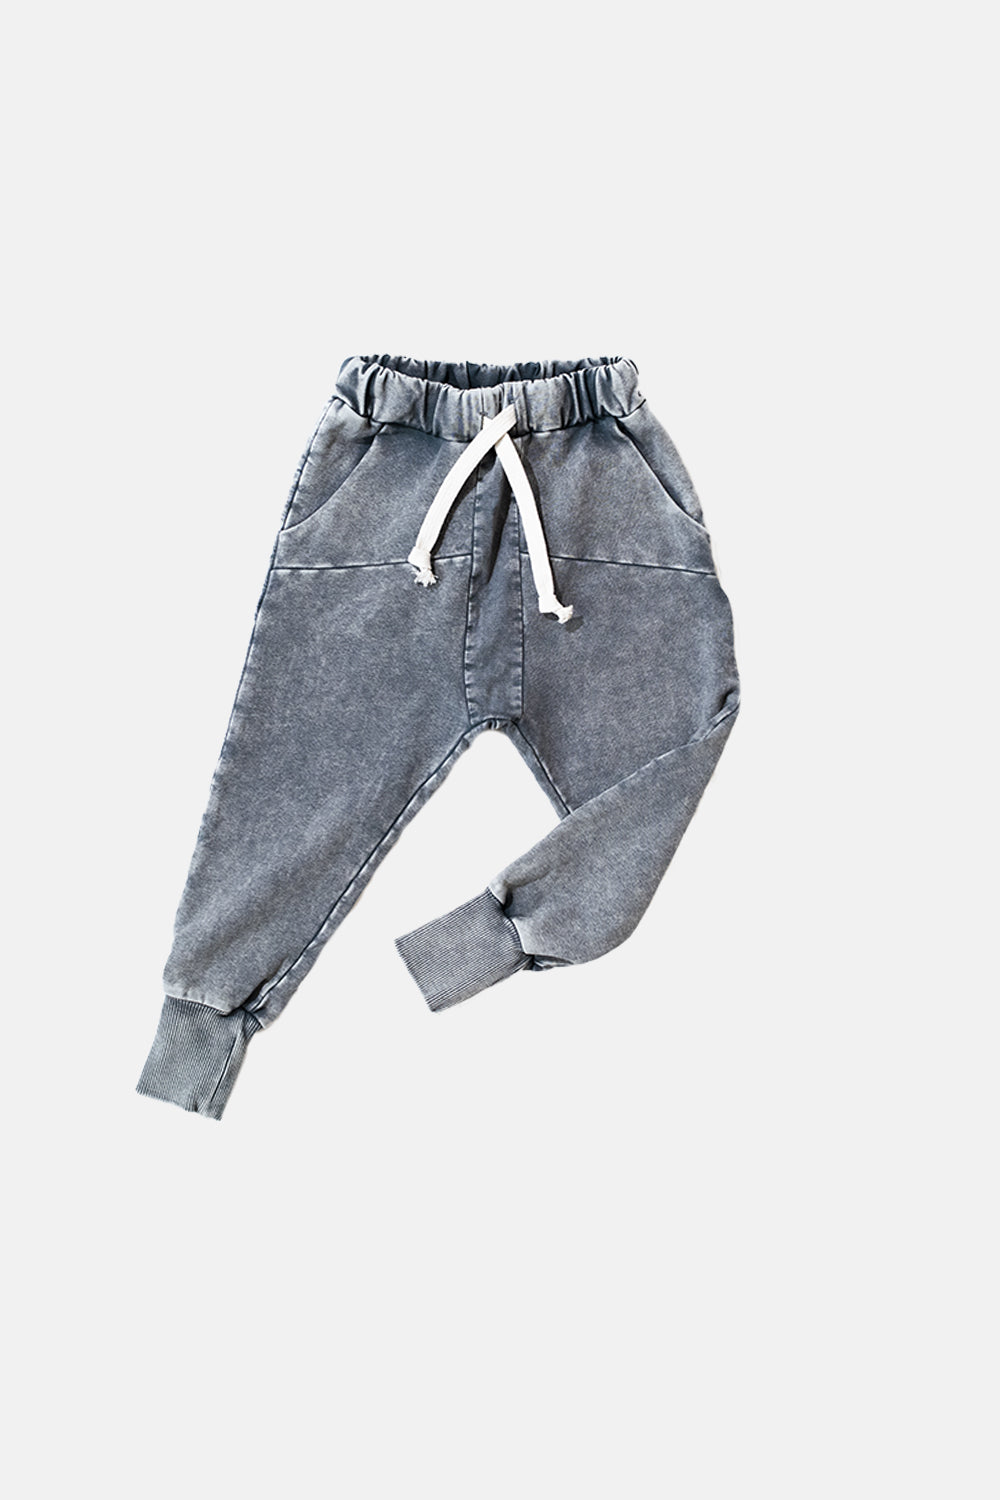 spodnie dziecięce -  STRIPED GRAY PANTS gray